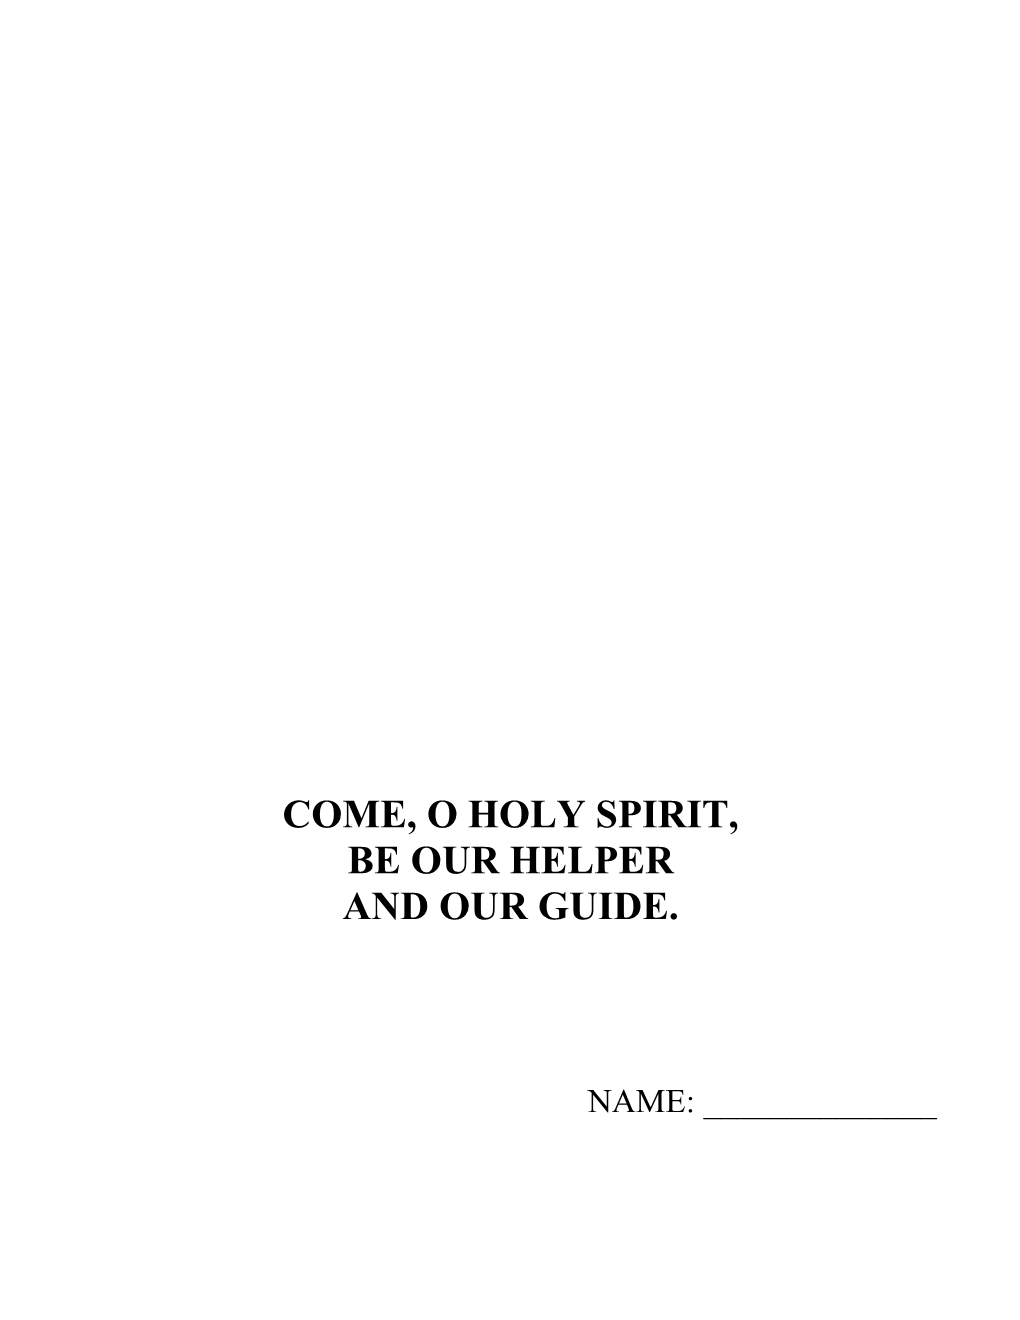 Come, O Holy Spirit